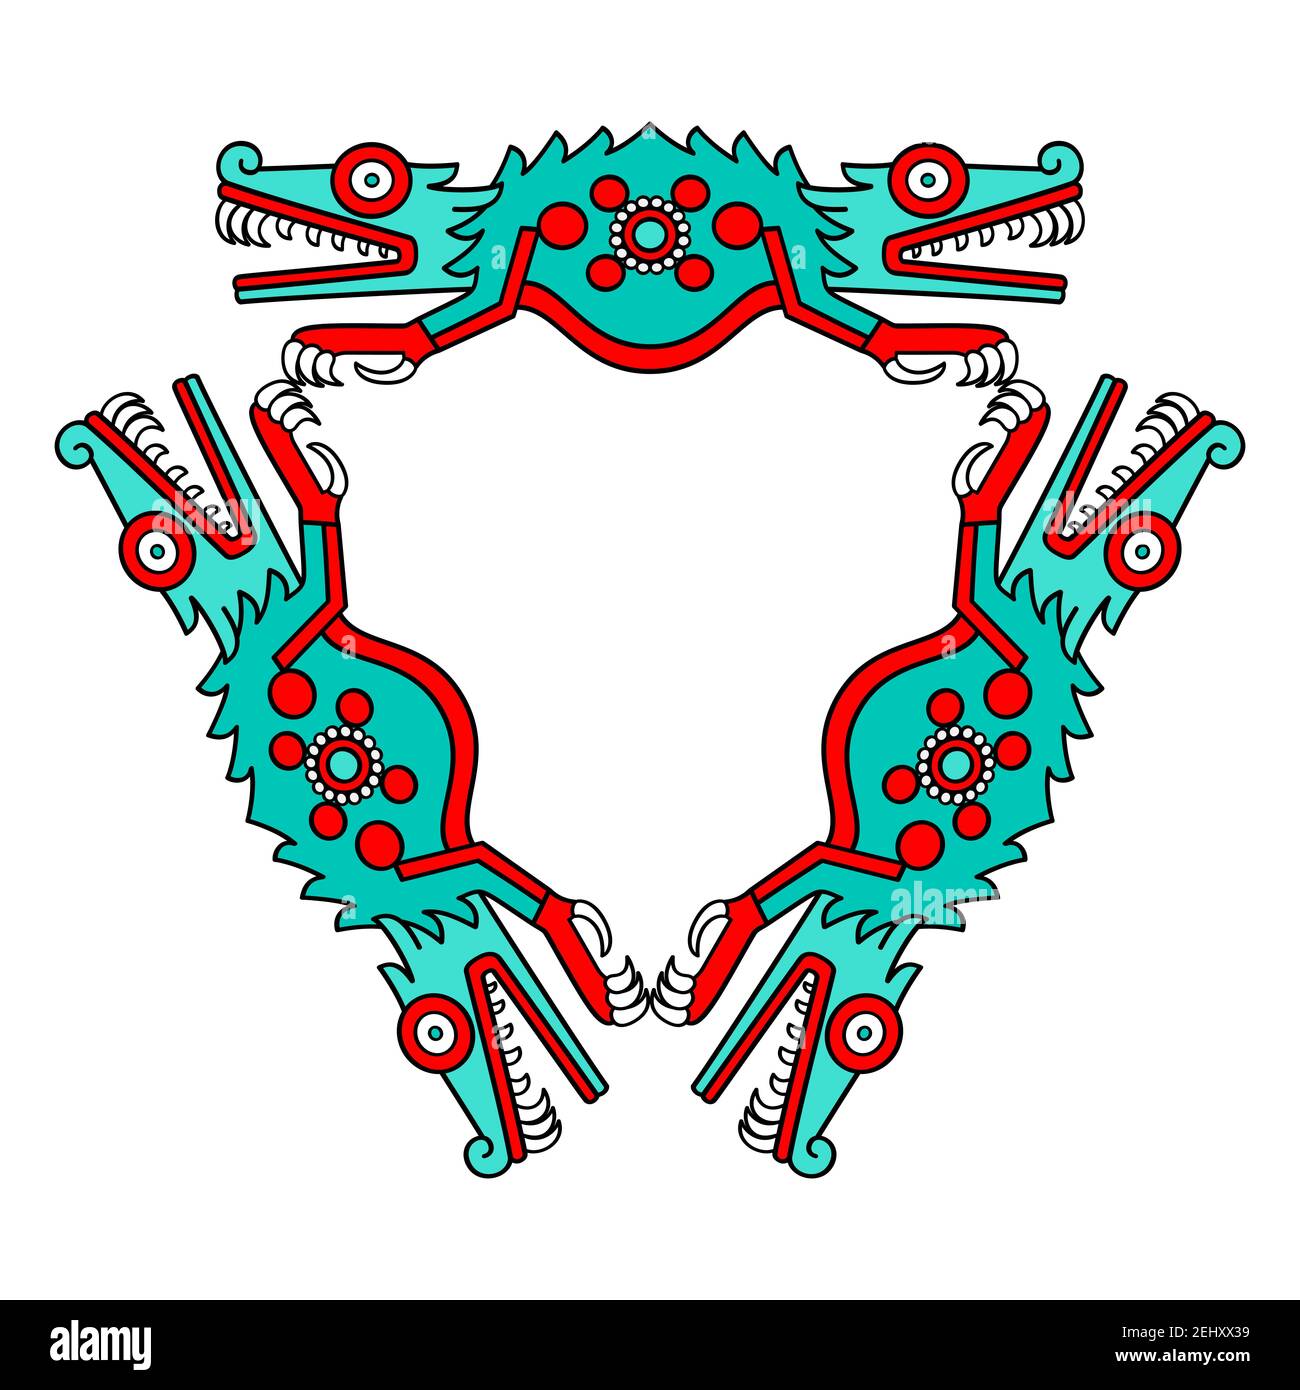 Décoration crocodile colorée en forme de triangle, style aztèque. Triangle turquoise, rouge et noir, composé de moitiés de corps de crocodile. Banque D'Images